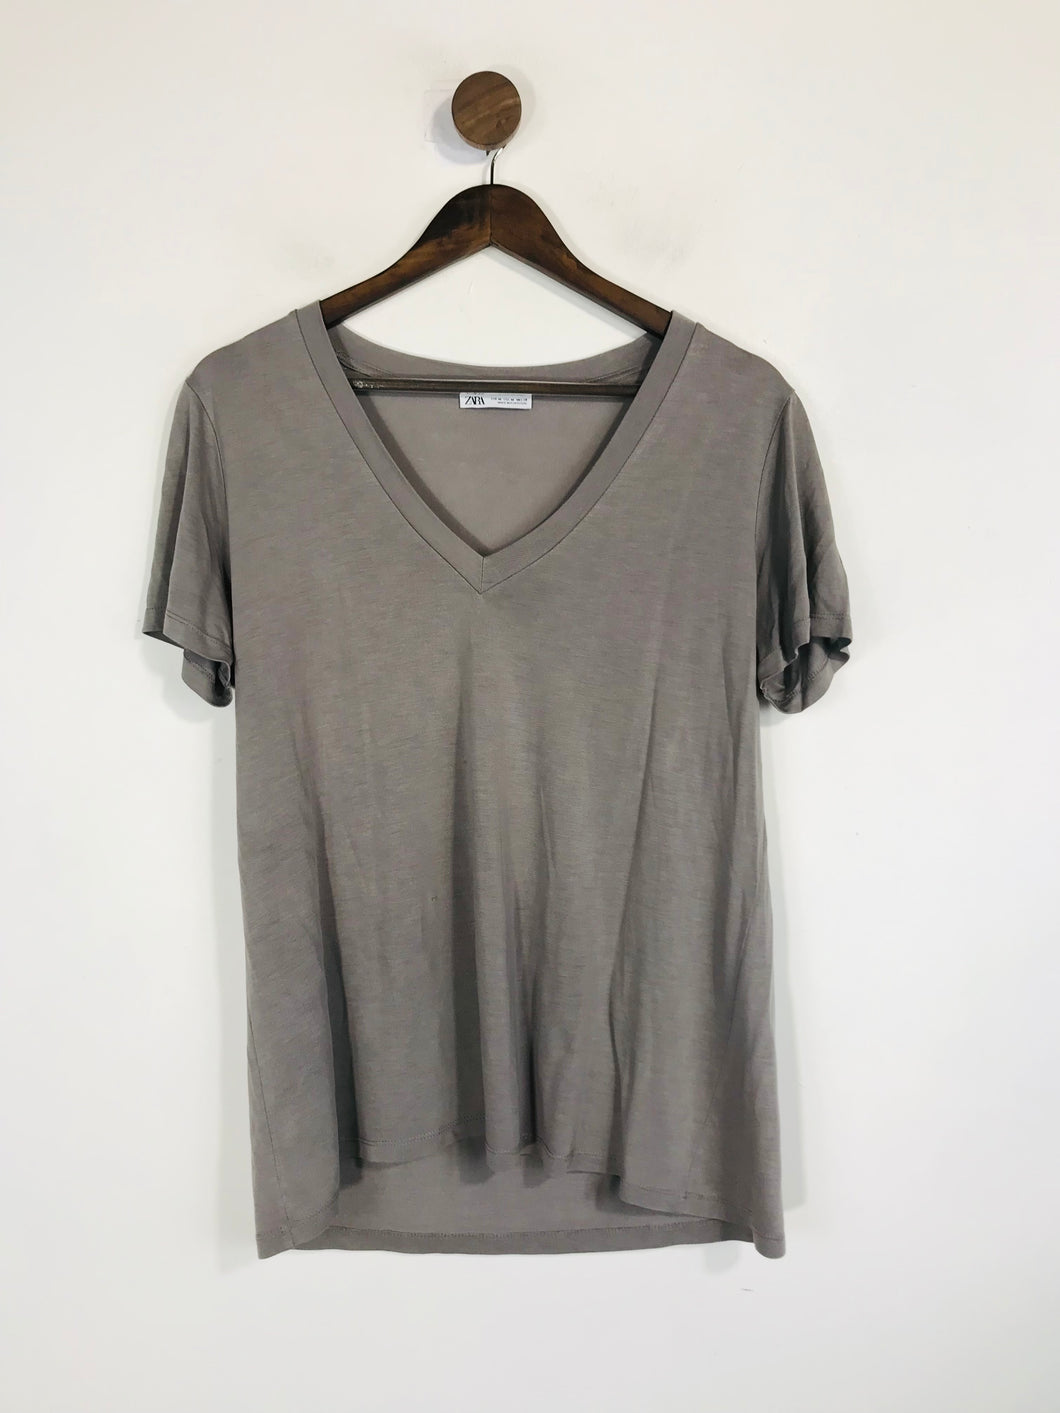 Zara Women's V-Neck T-Shirt | M UK10-12 | Grey